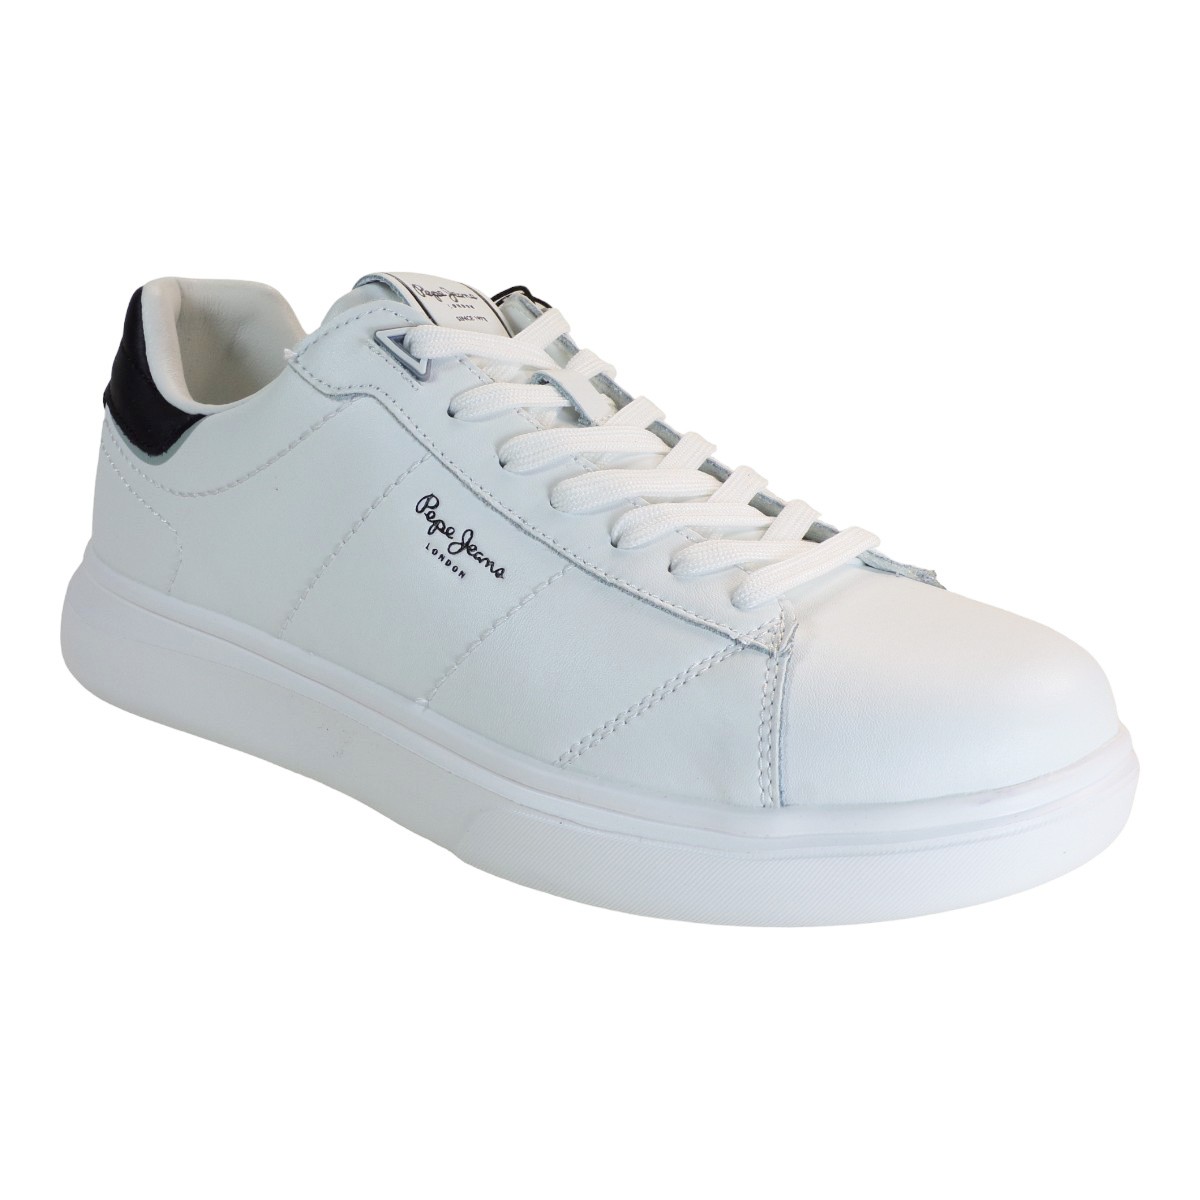 Pepe jeans EATON BASIC Sneakers Ανδρικά Παπούτσια PMS30981-800 Λευκό Λευκό